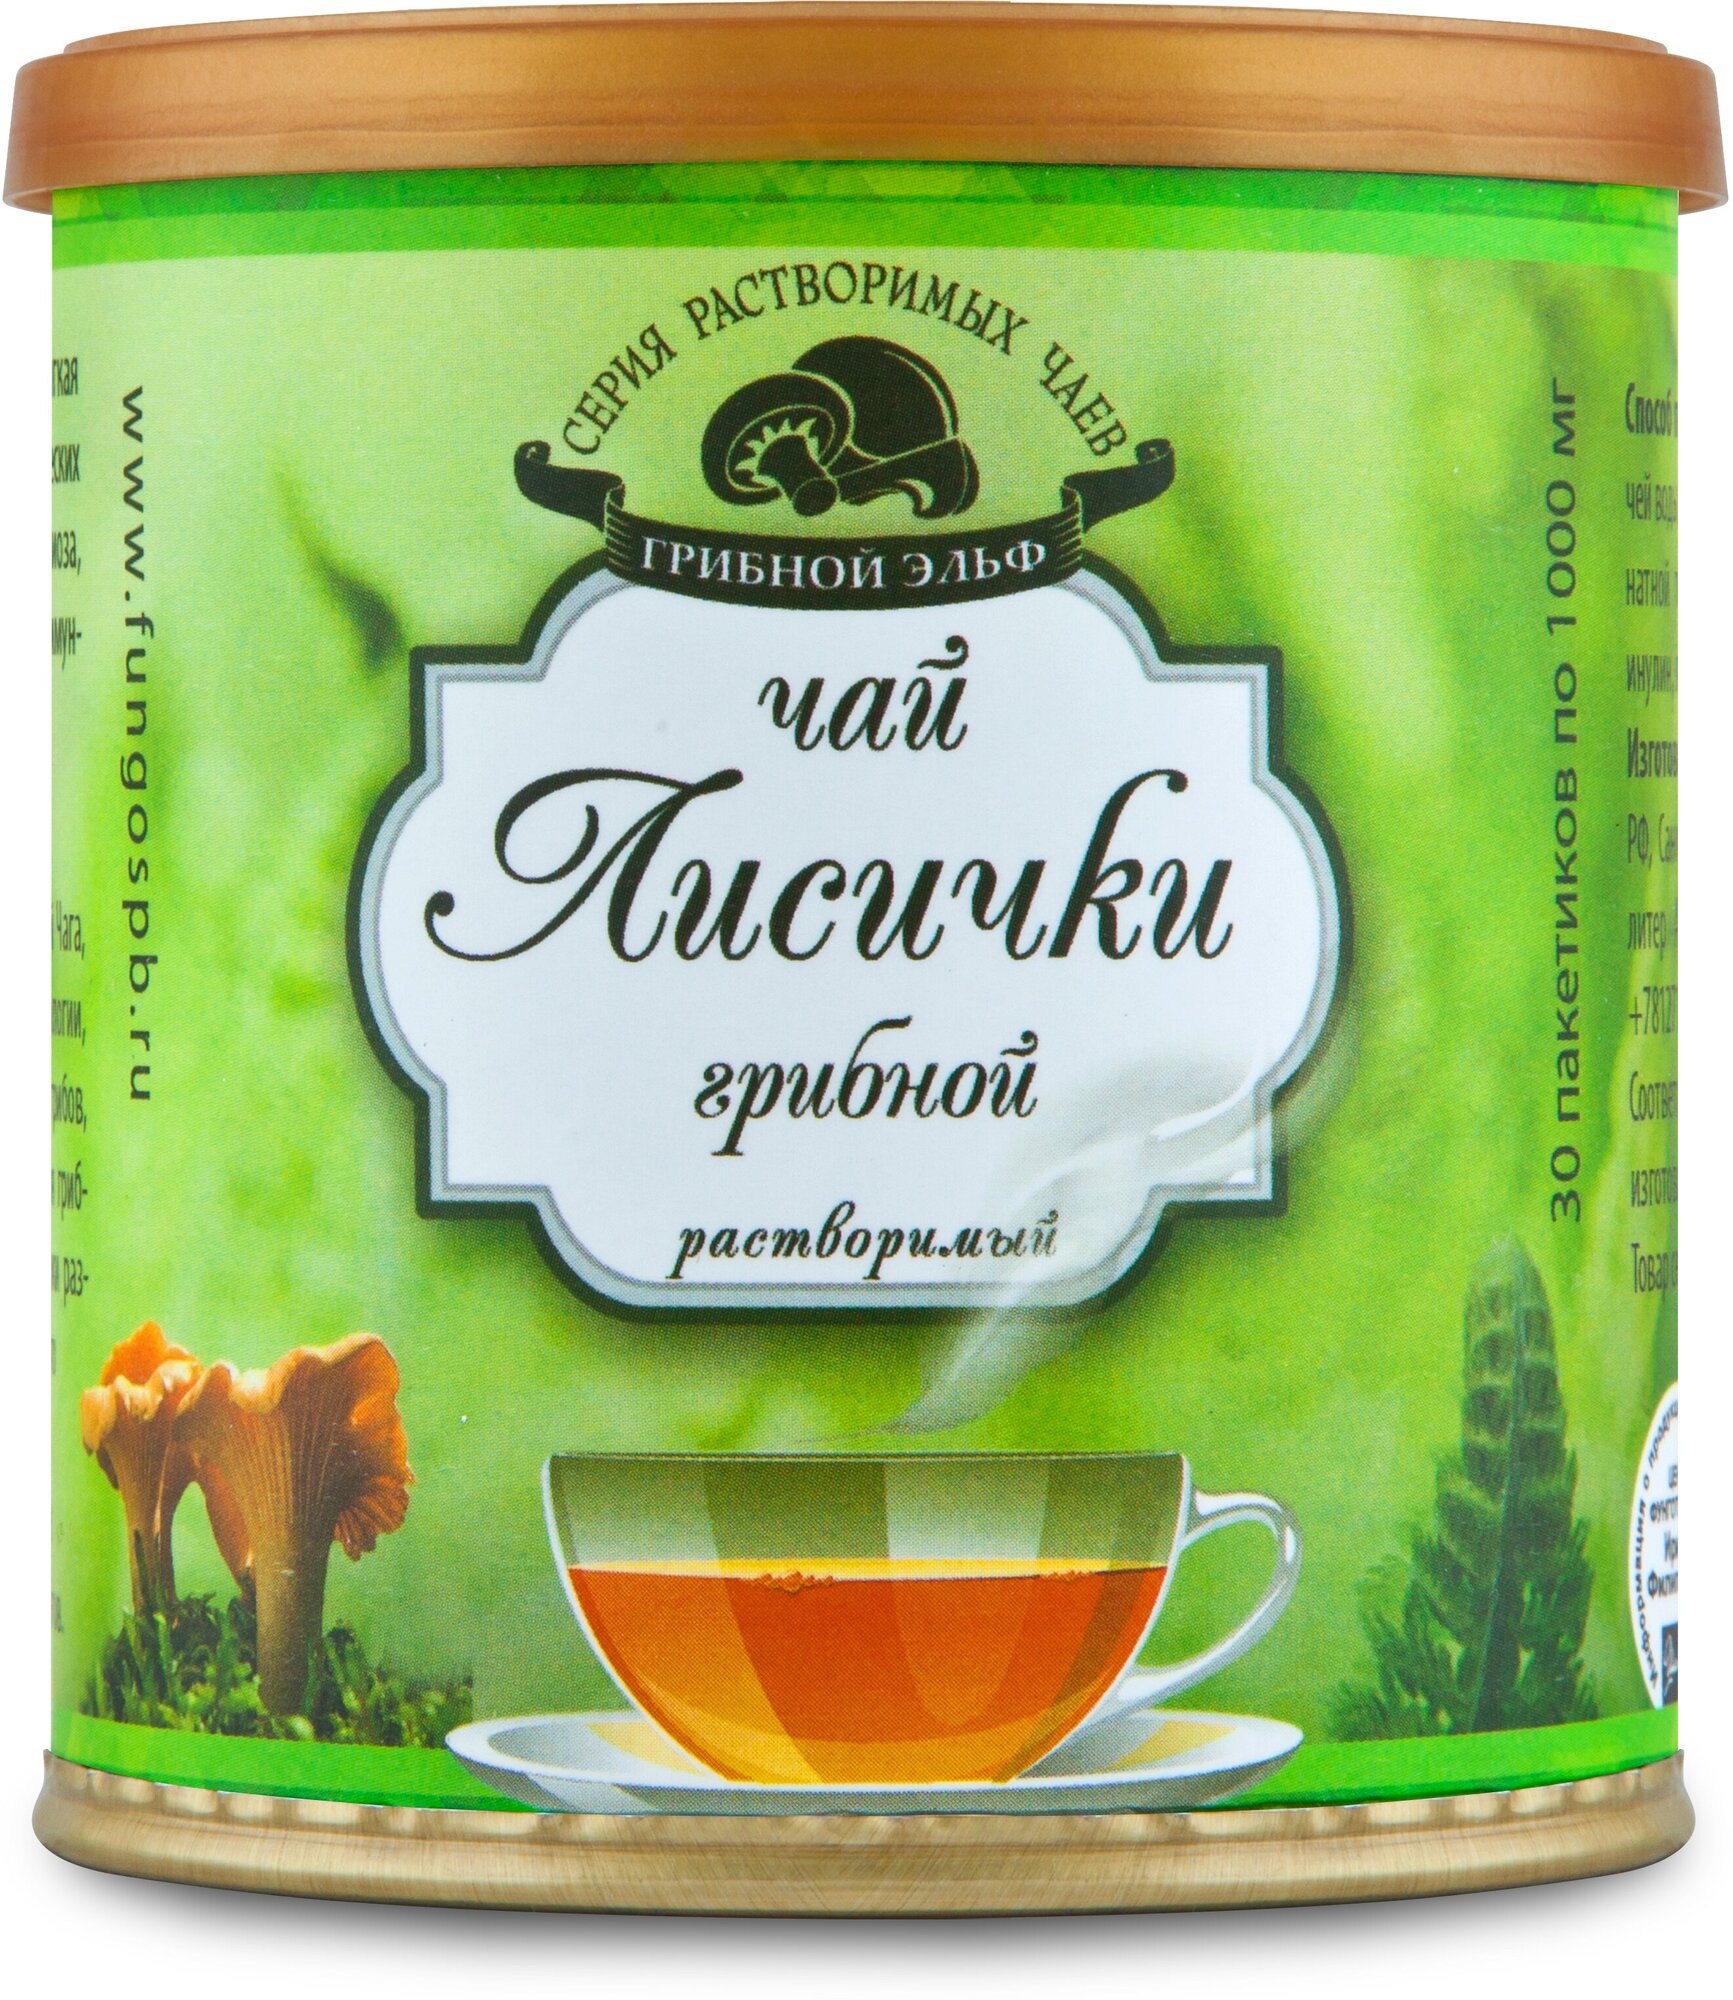 Чайный напиток Лисички растворимый на основе экстракта дикорастущего гриба торговой марки ФунгоШи